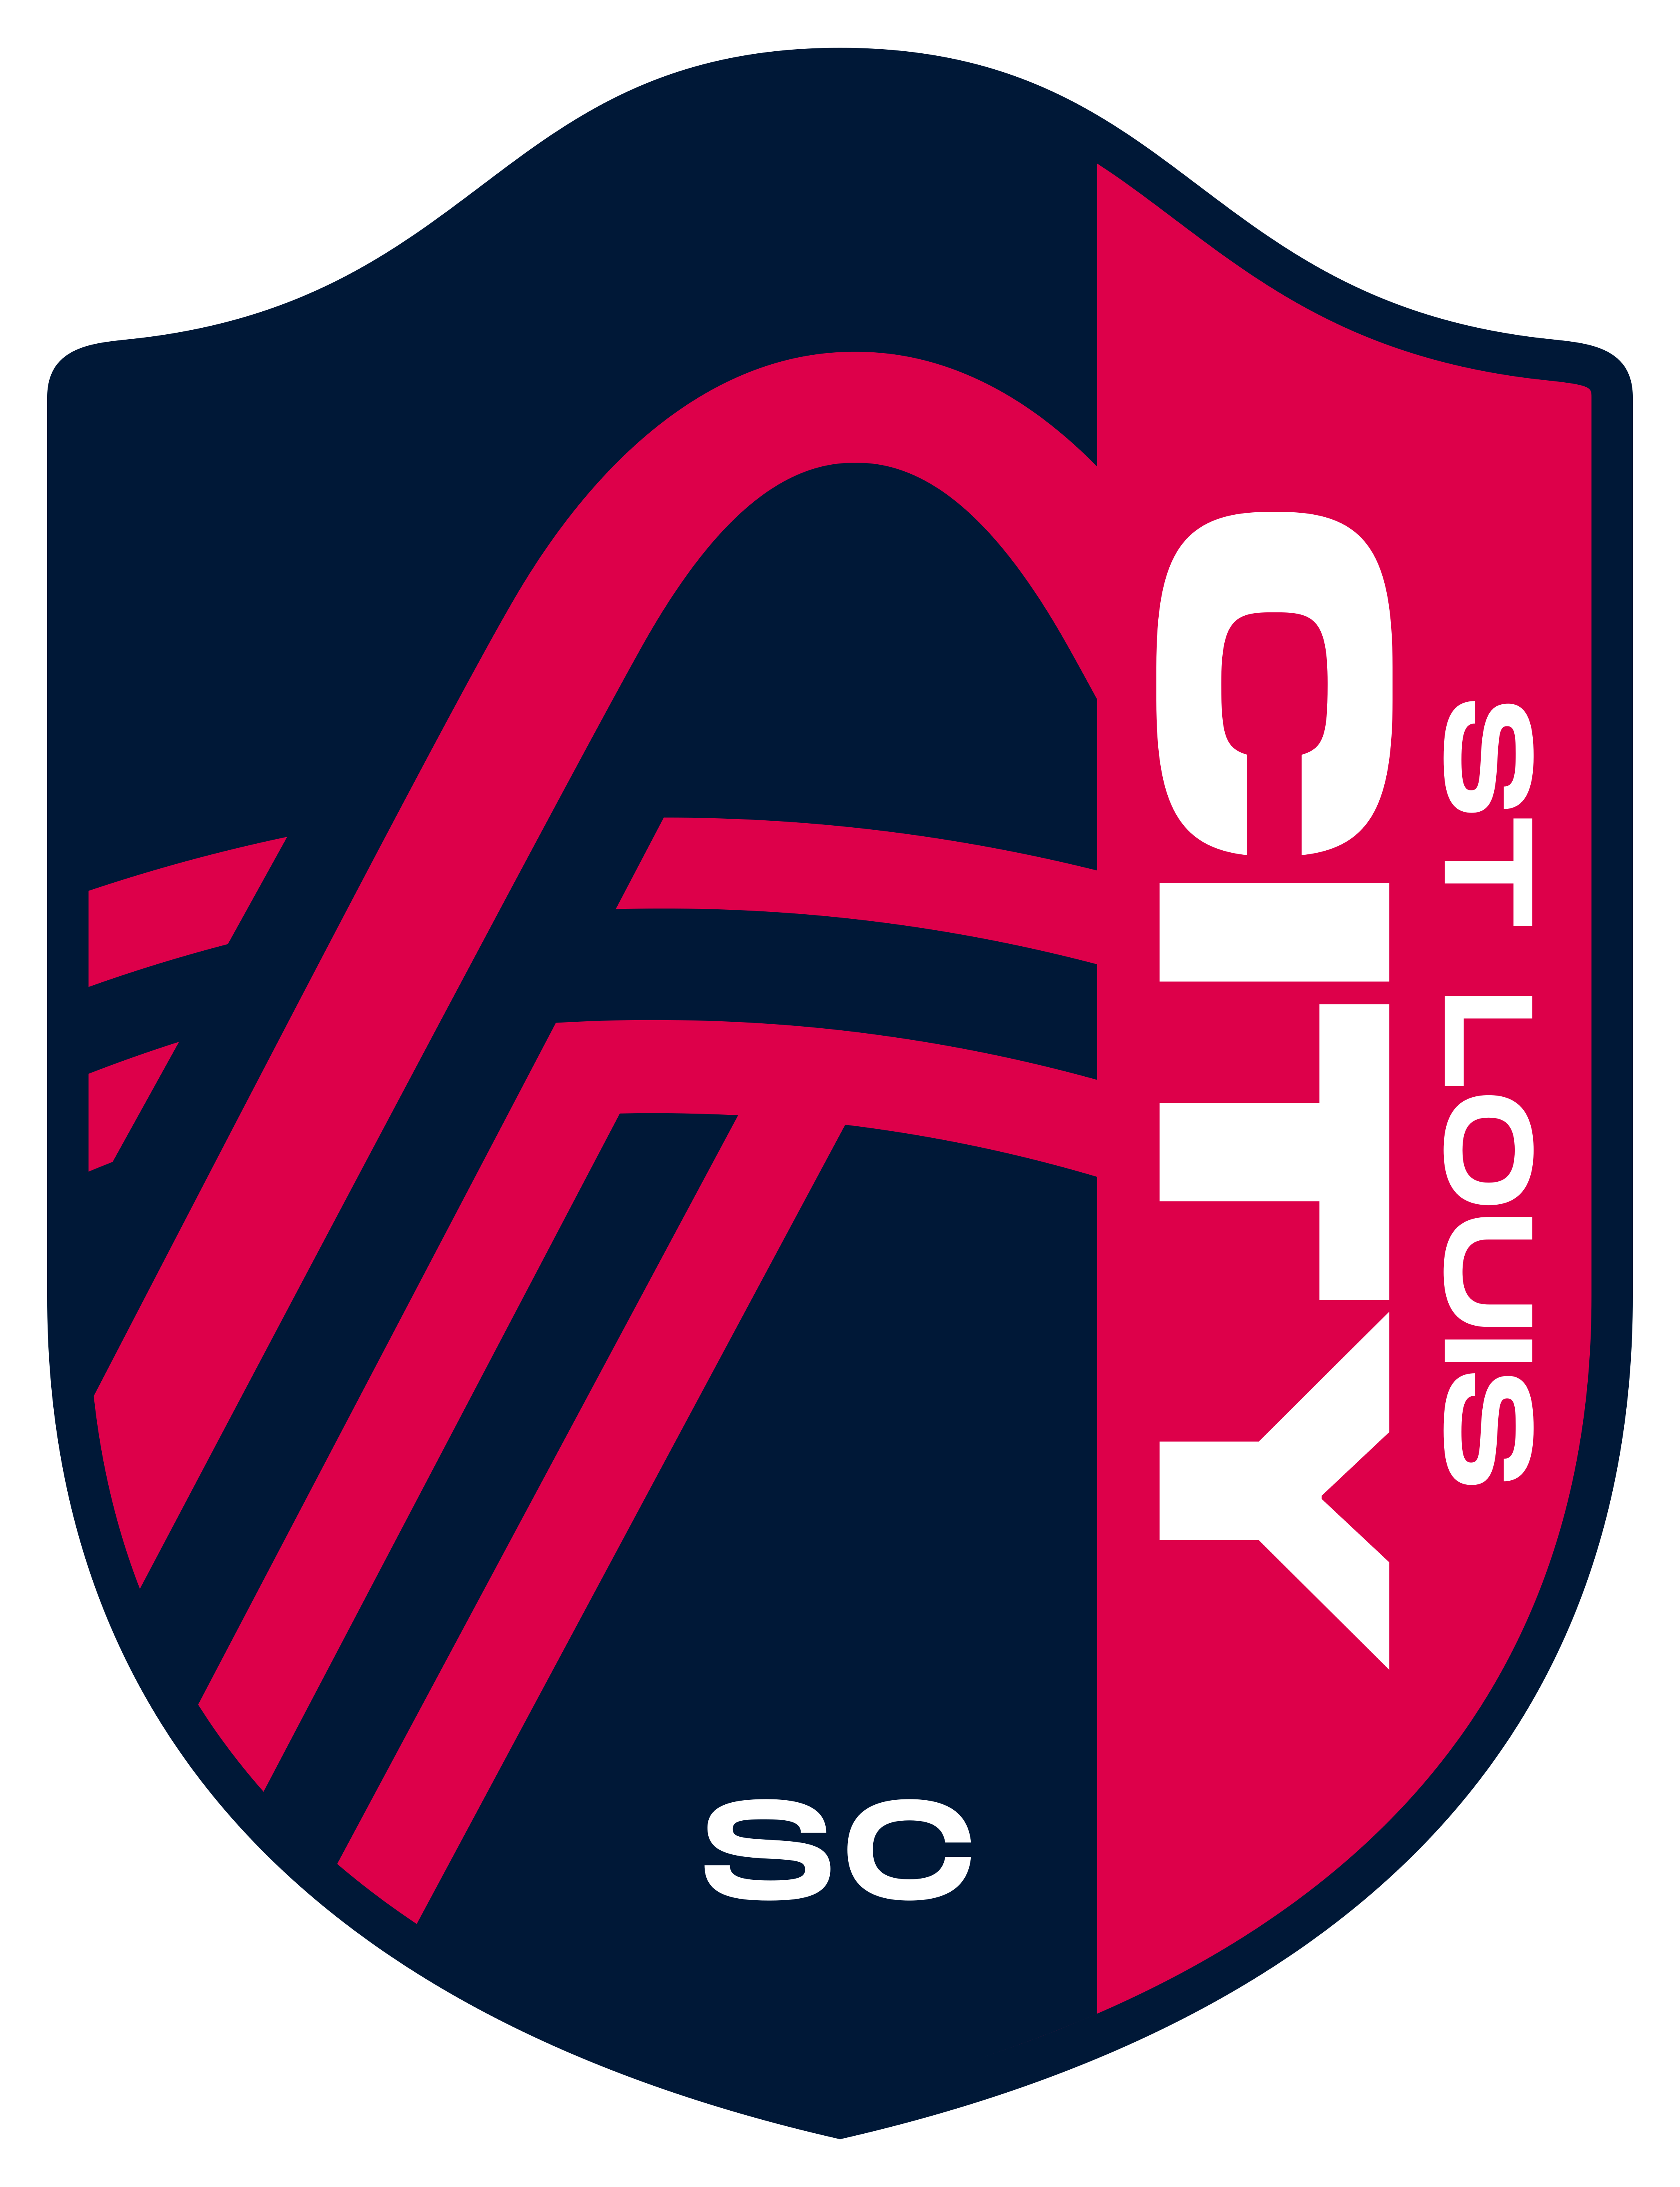 st louis city sc logo - St. Louis City SC Logo